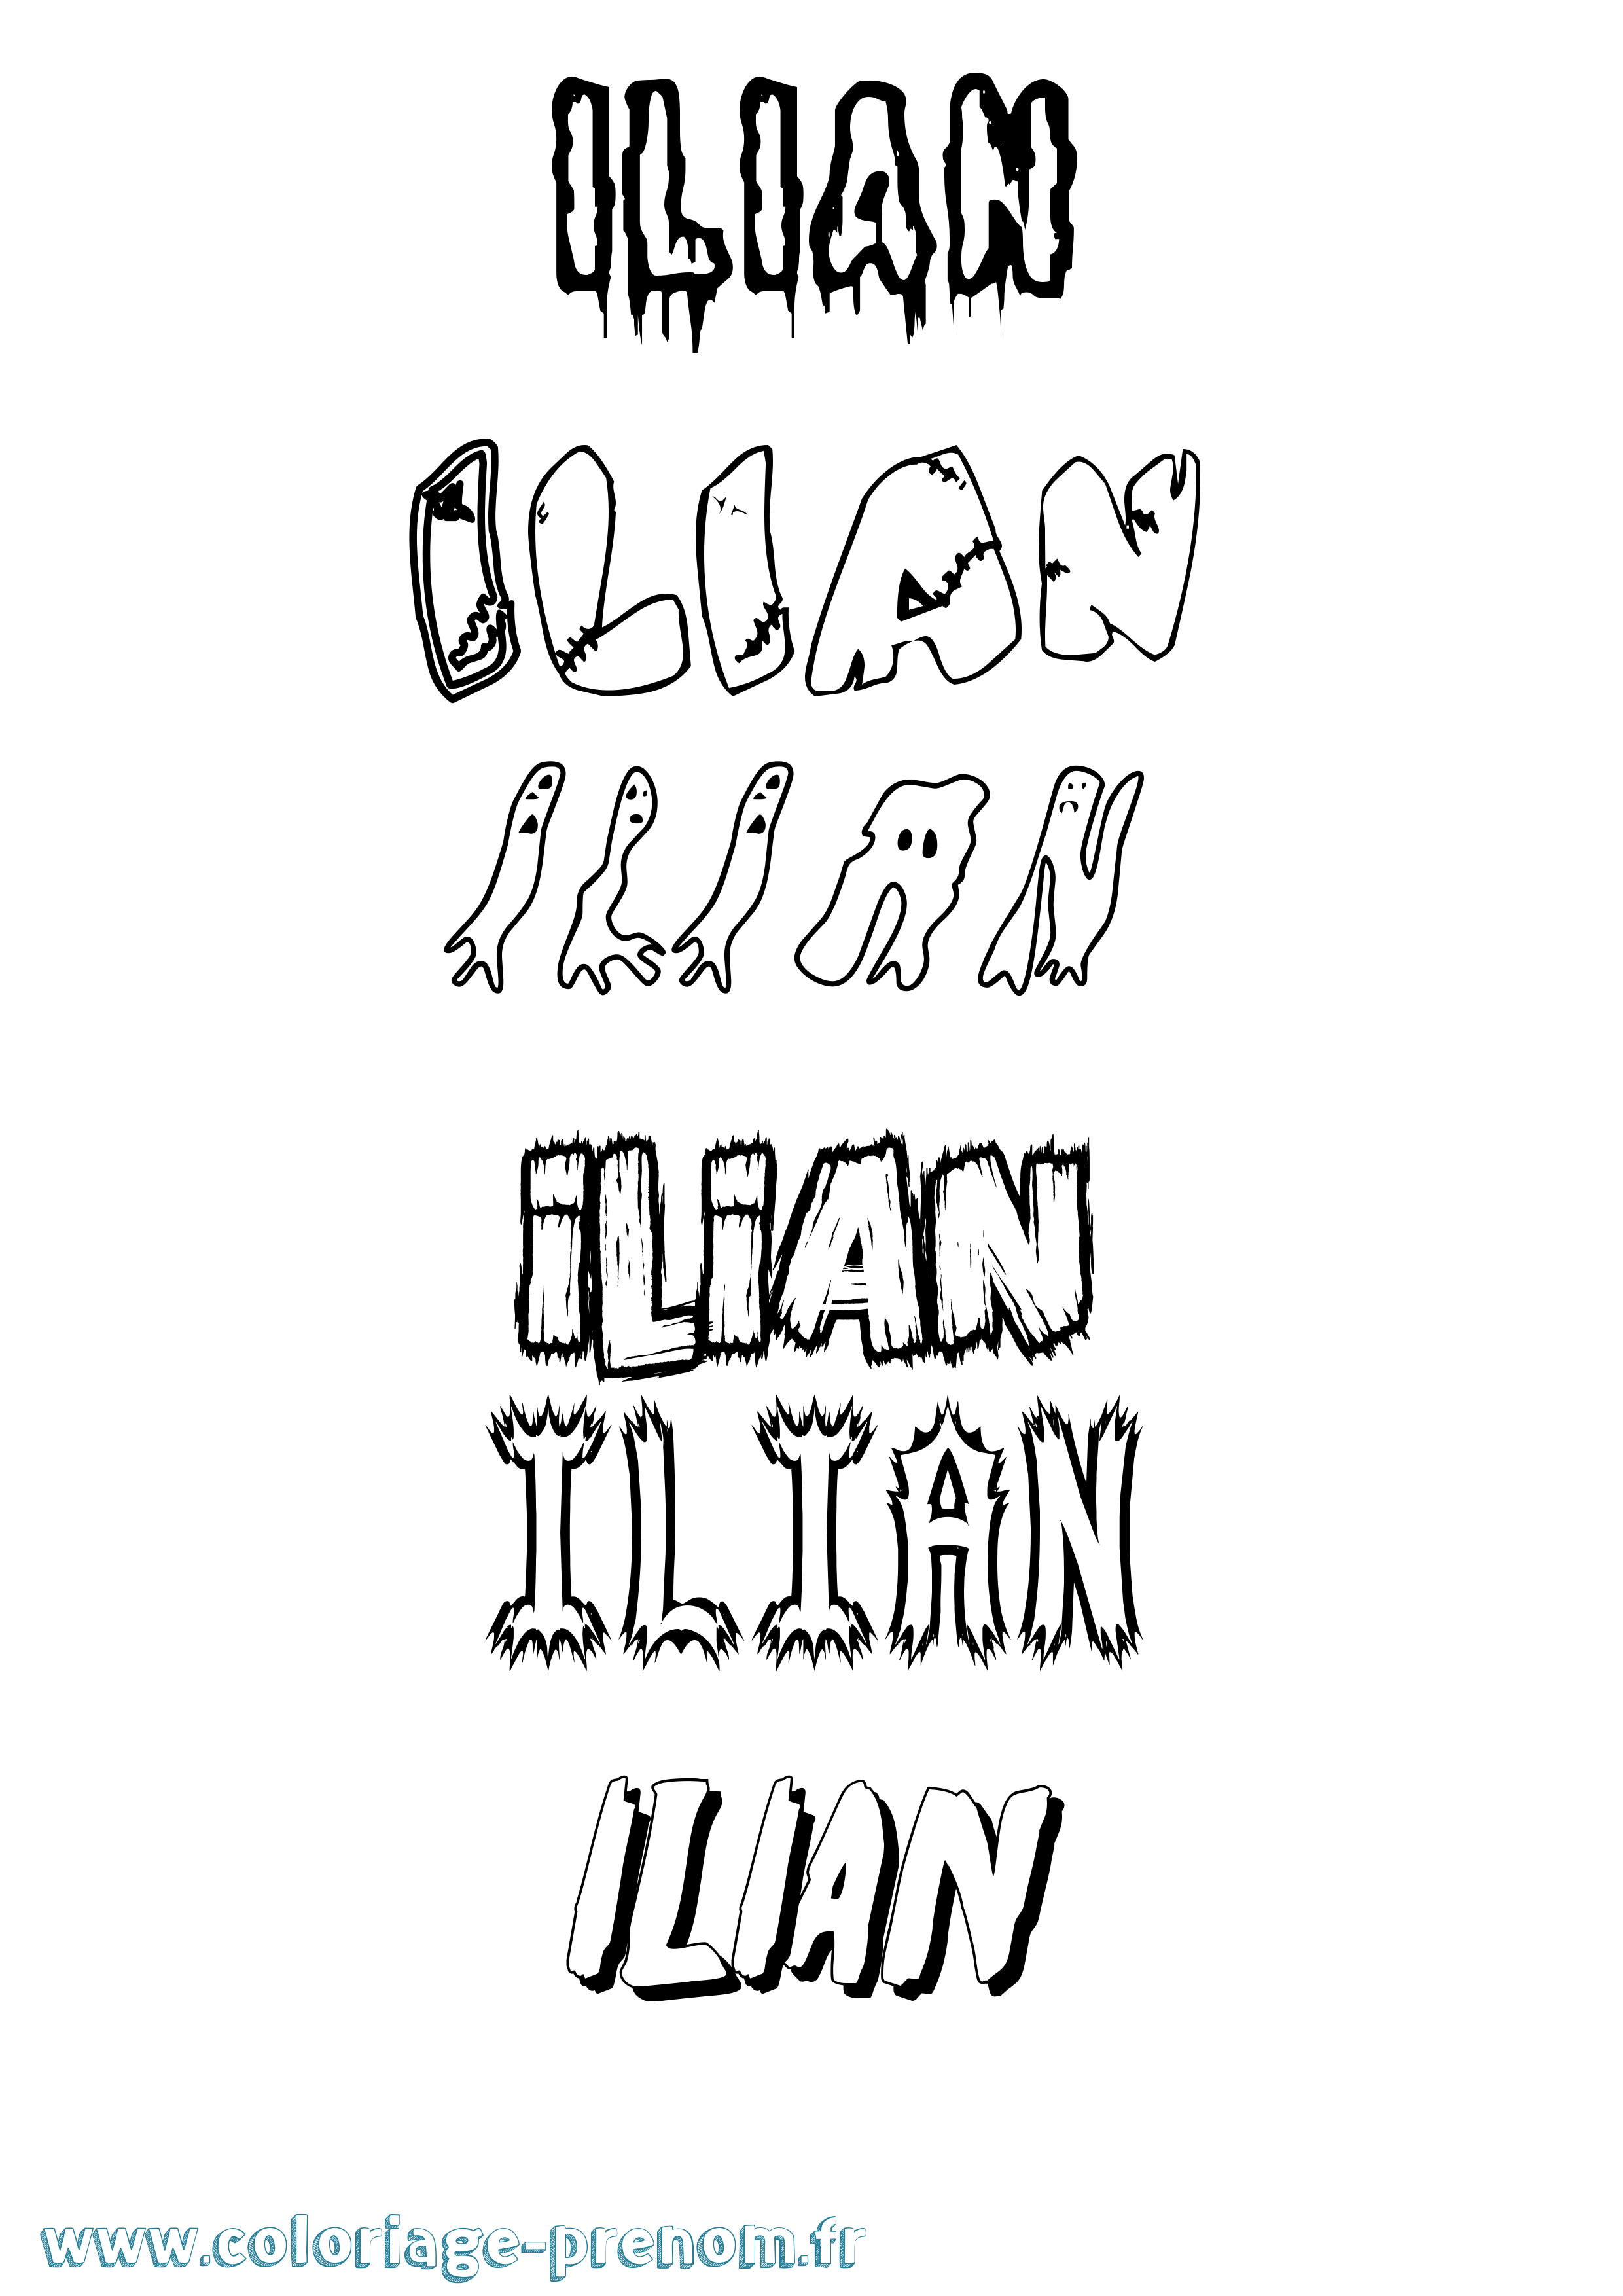 Coloriage prénom Ilian